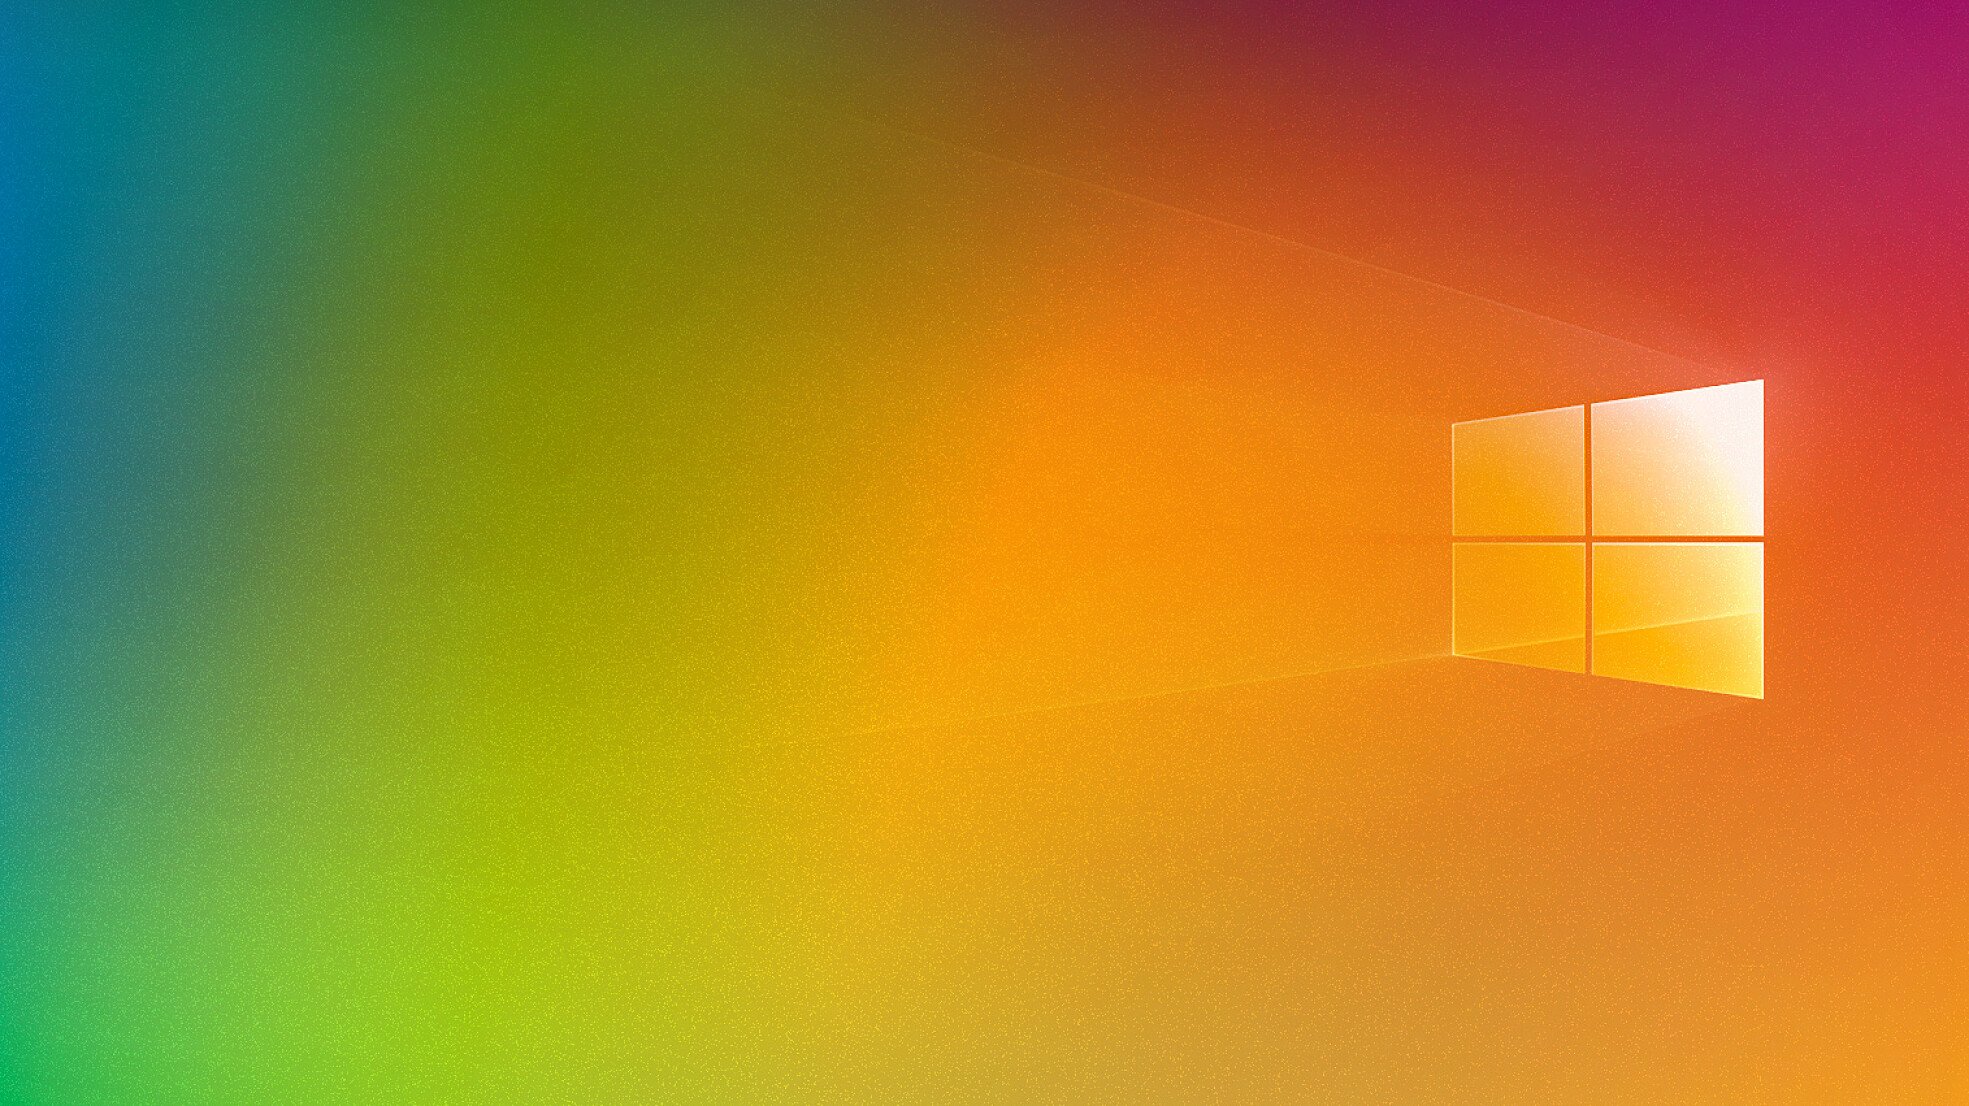 Maak Een Schone Windows 10 Installatie